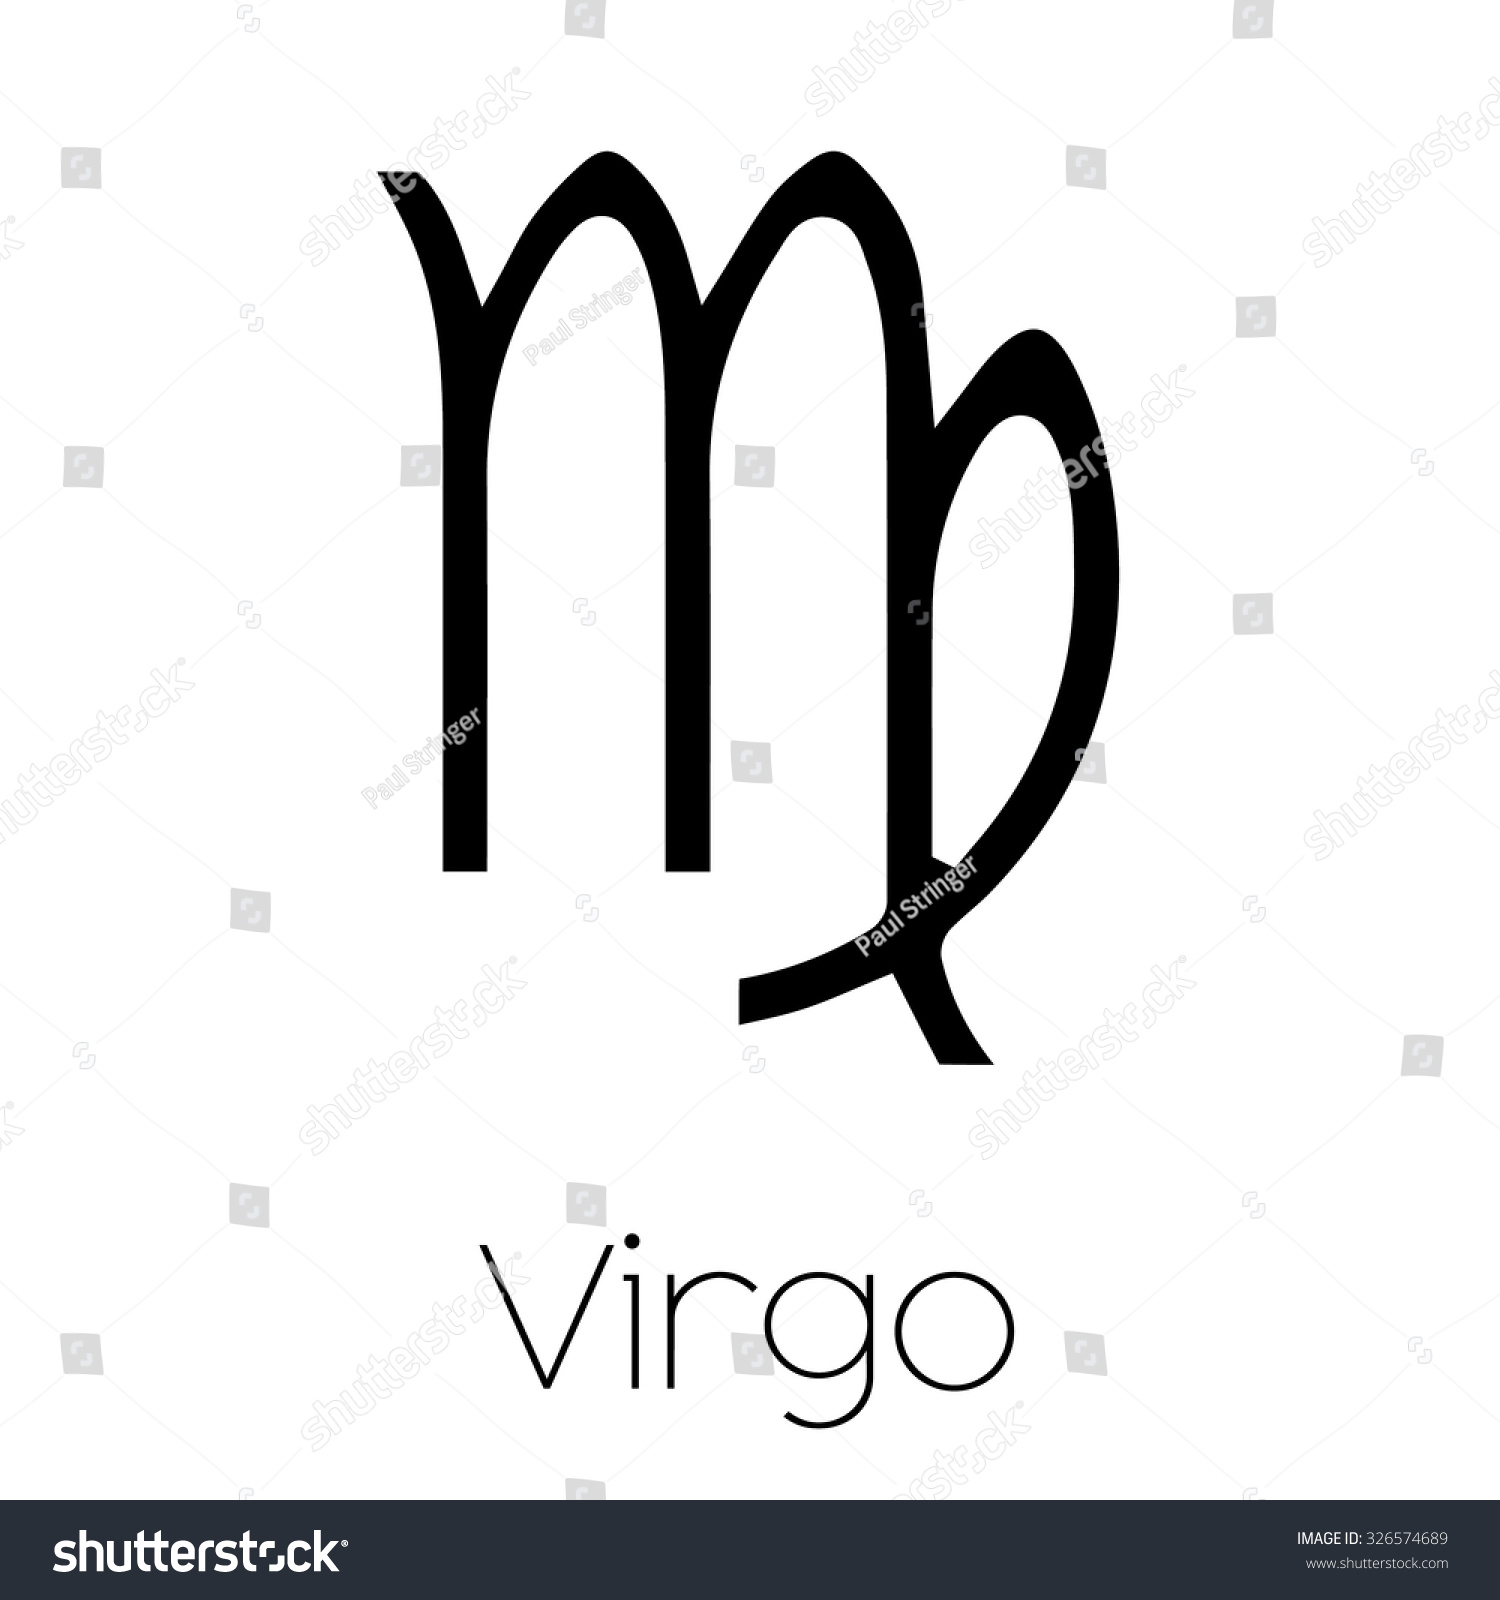 Virgo Logos